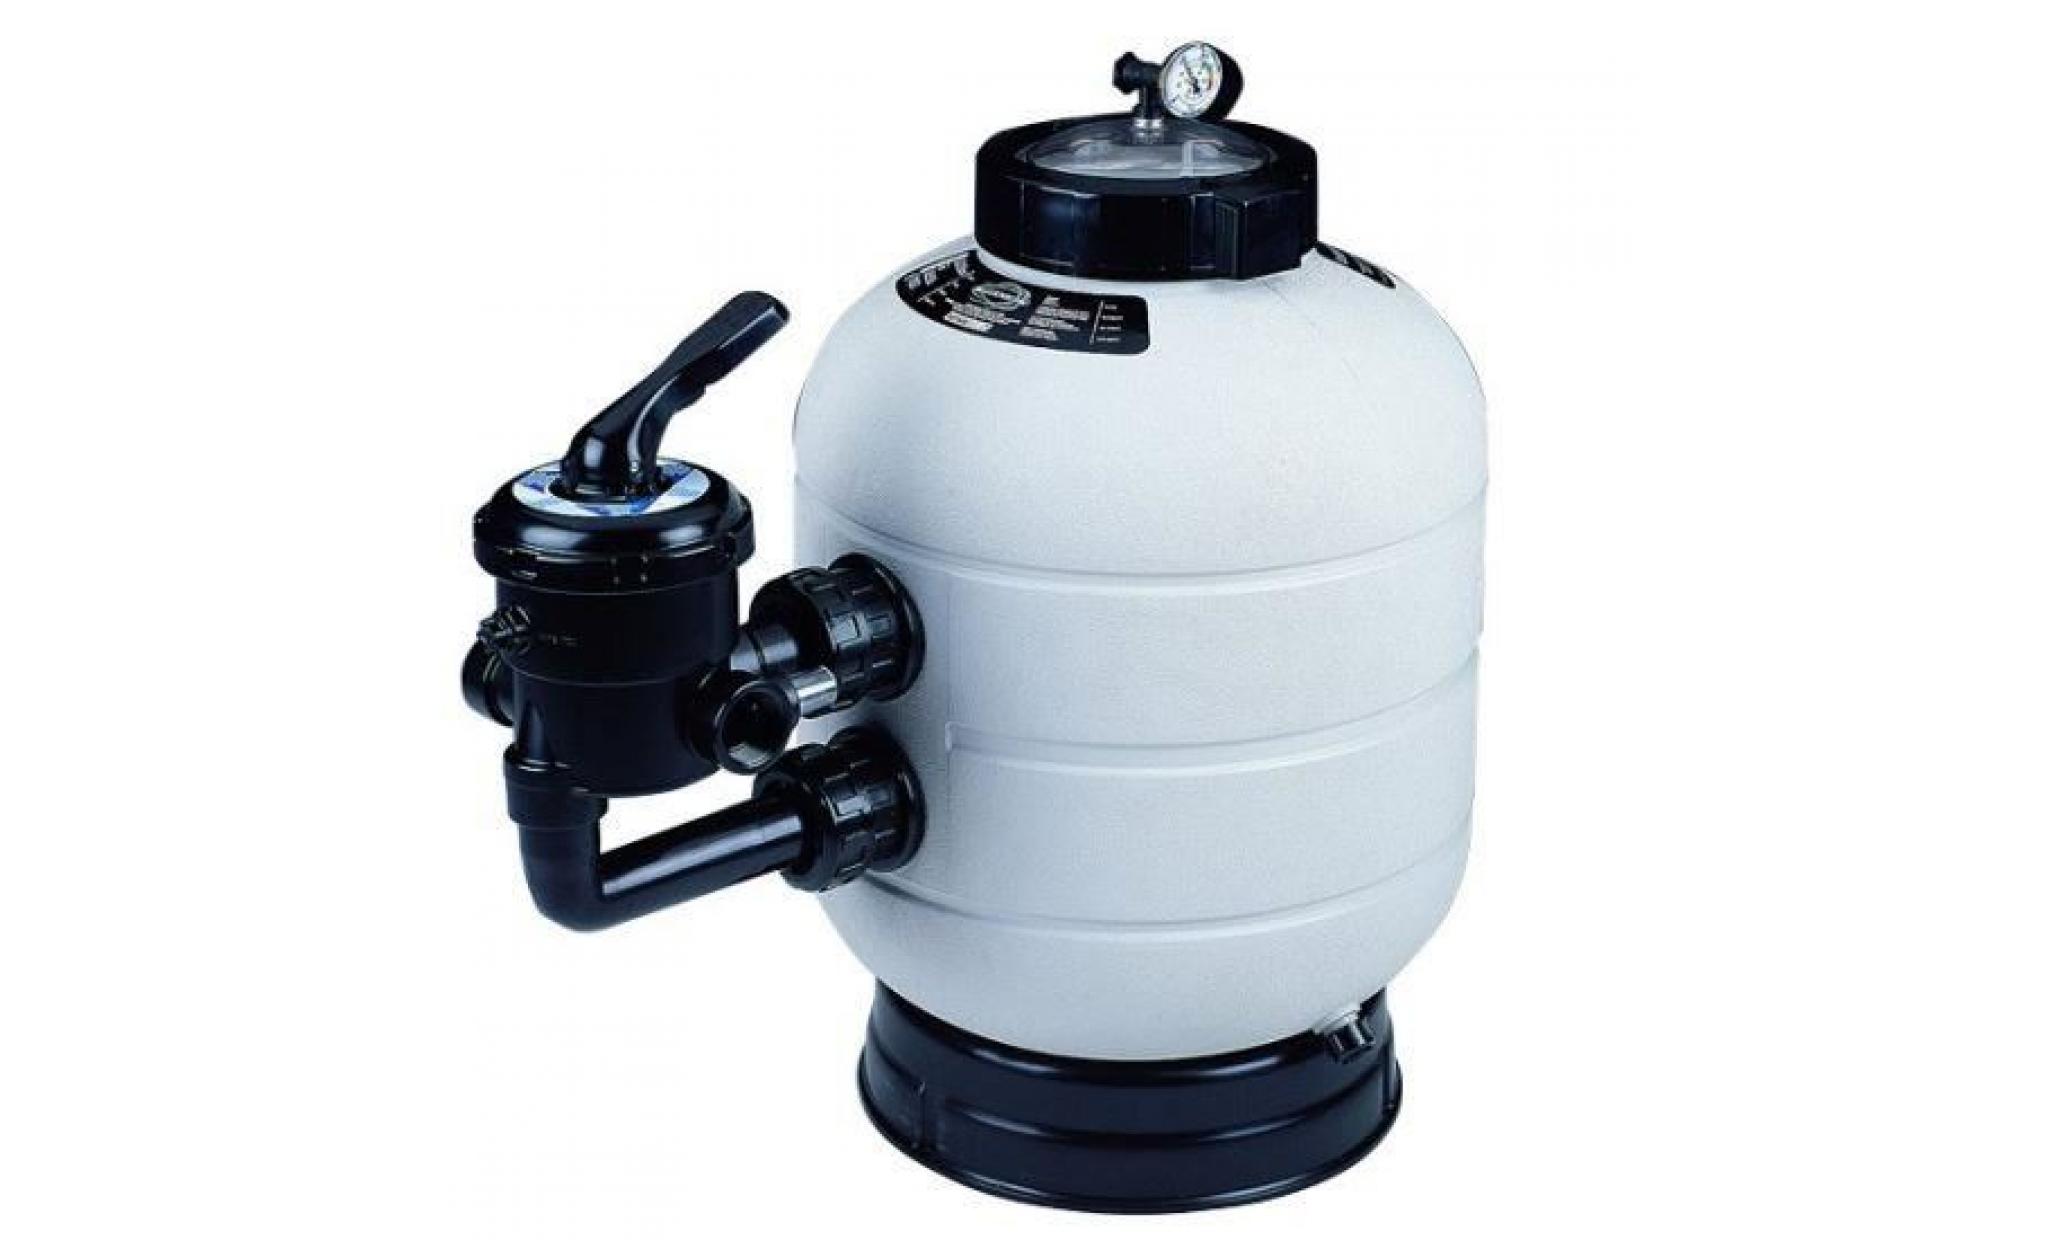 groupe de filtration piscine astral : pompe sena + filtre millenium 9 m3/h pas cher